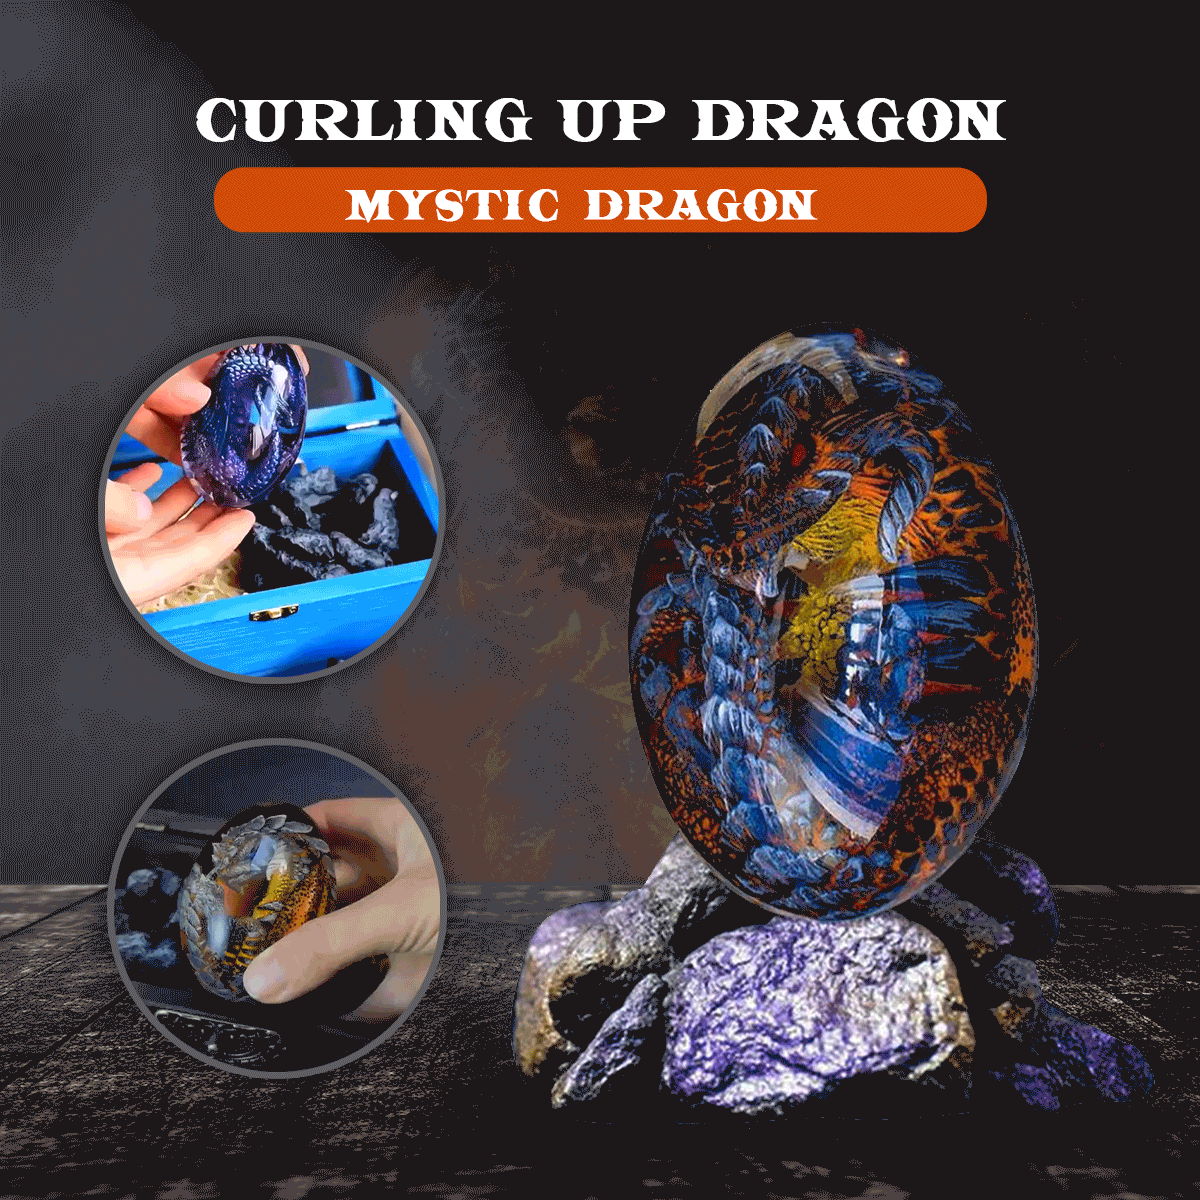 Draconia™ Fantasiebedeltje - Laat de magie van draken je dromen bewaken